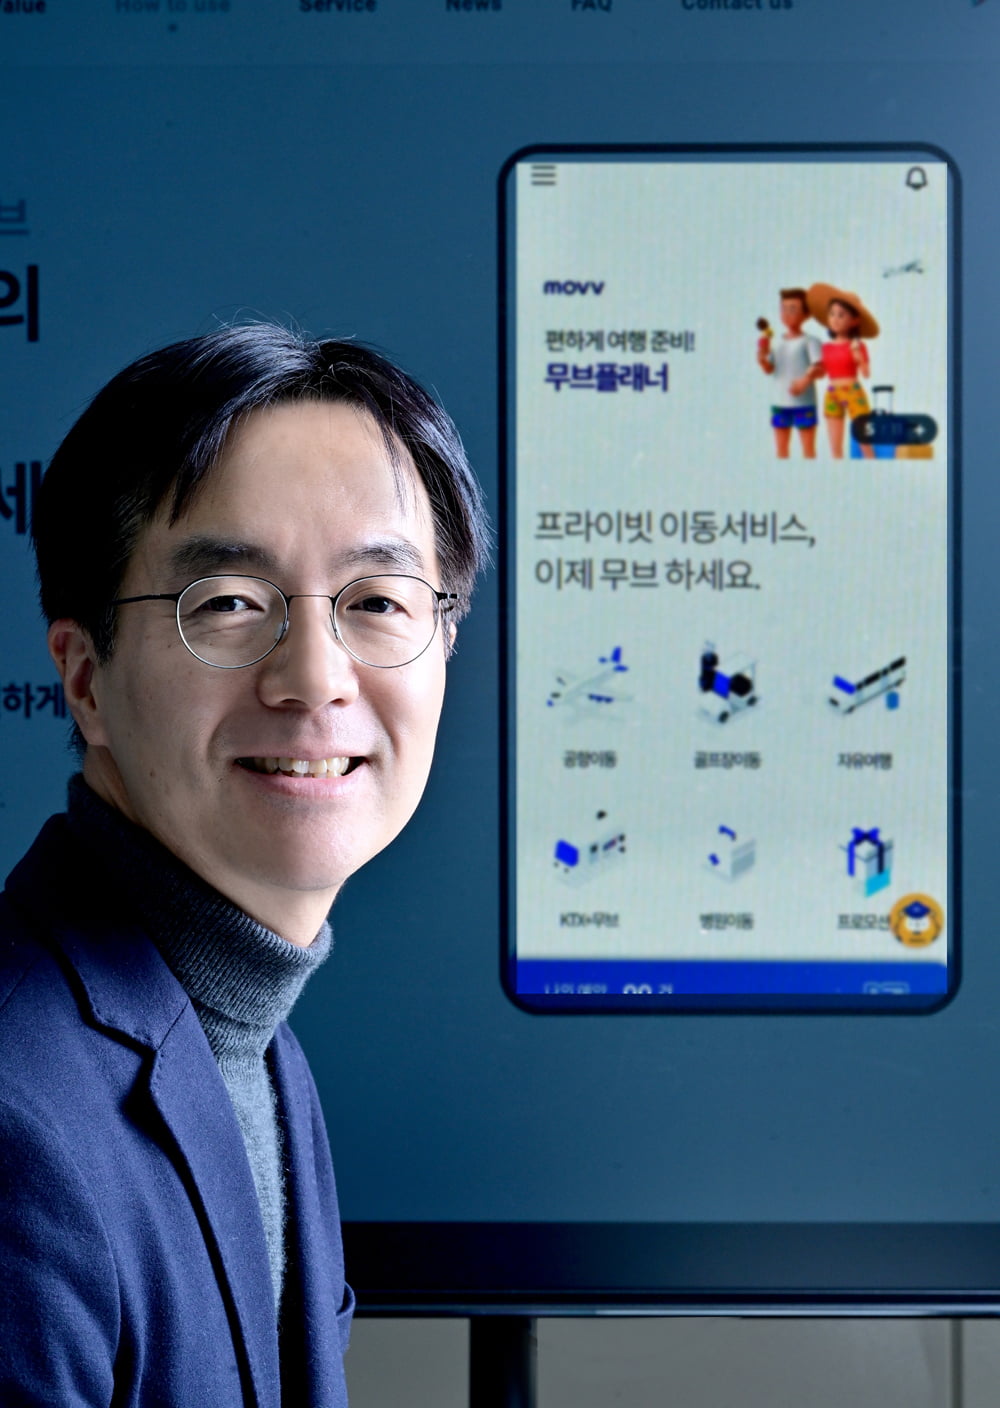 [서울대학교기술지주 스타트업 CEO] 글로벌 트래블 모빌리티 플랫폼을 개발한 스타트업 ‘무브’